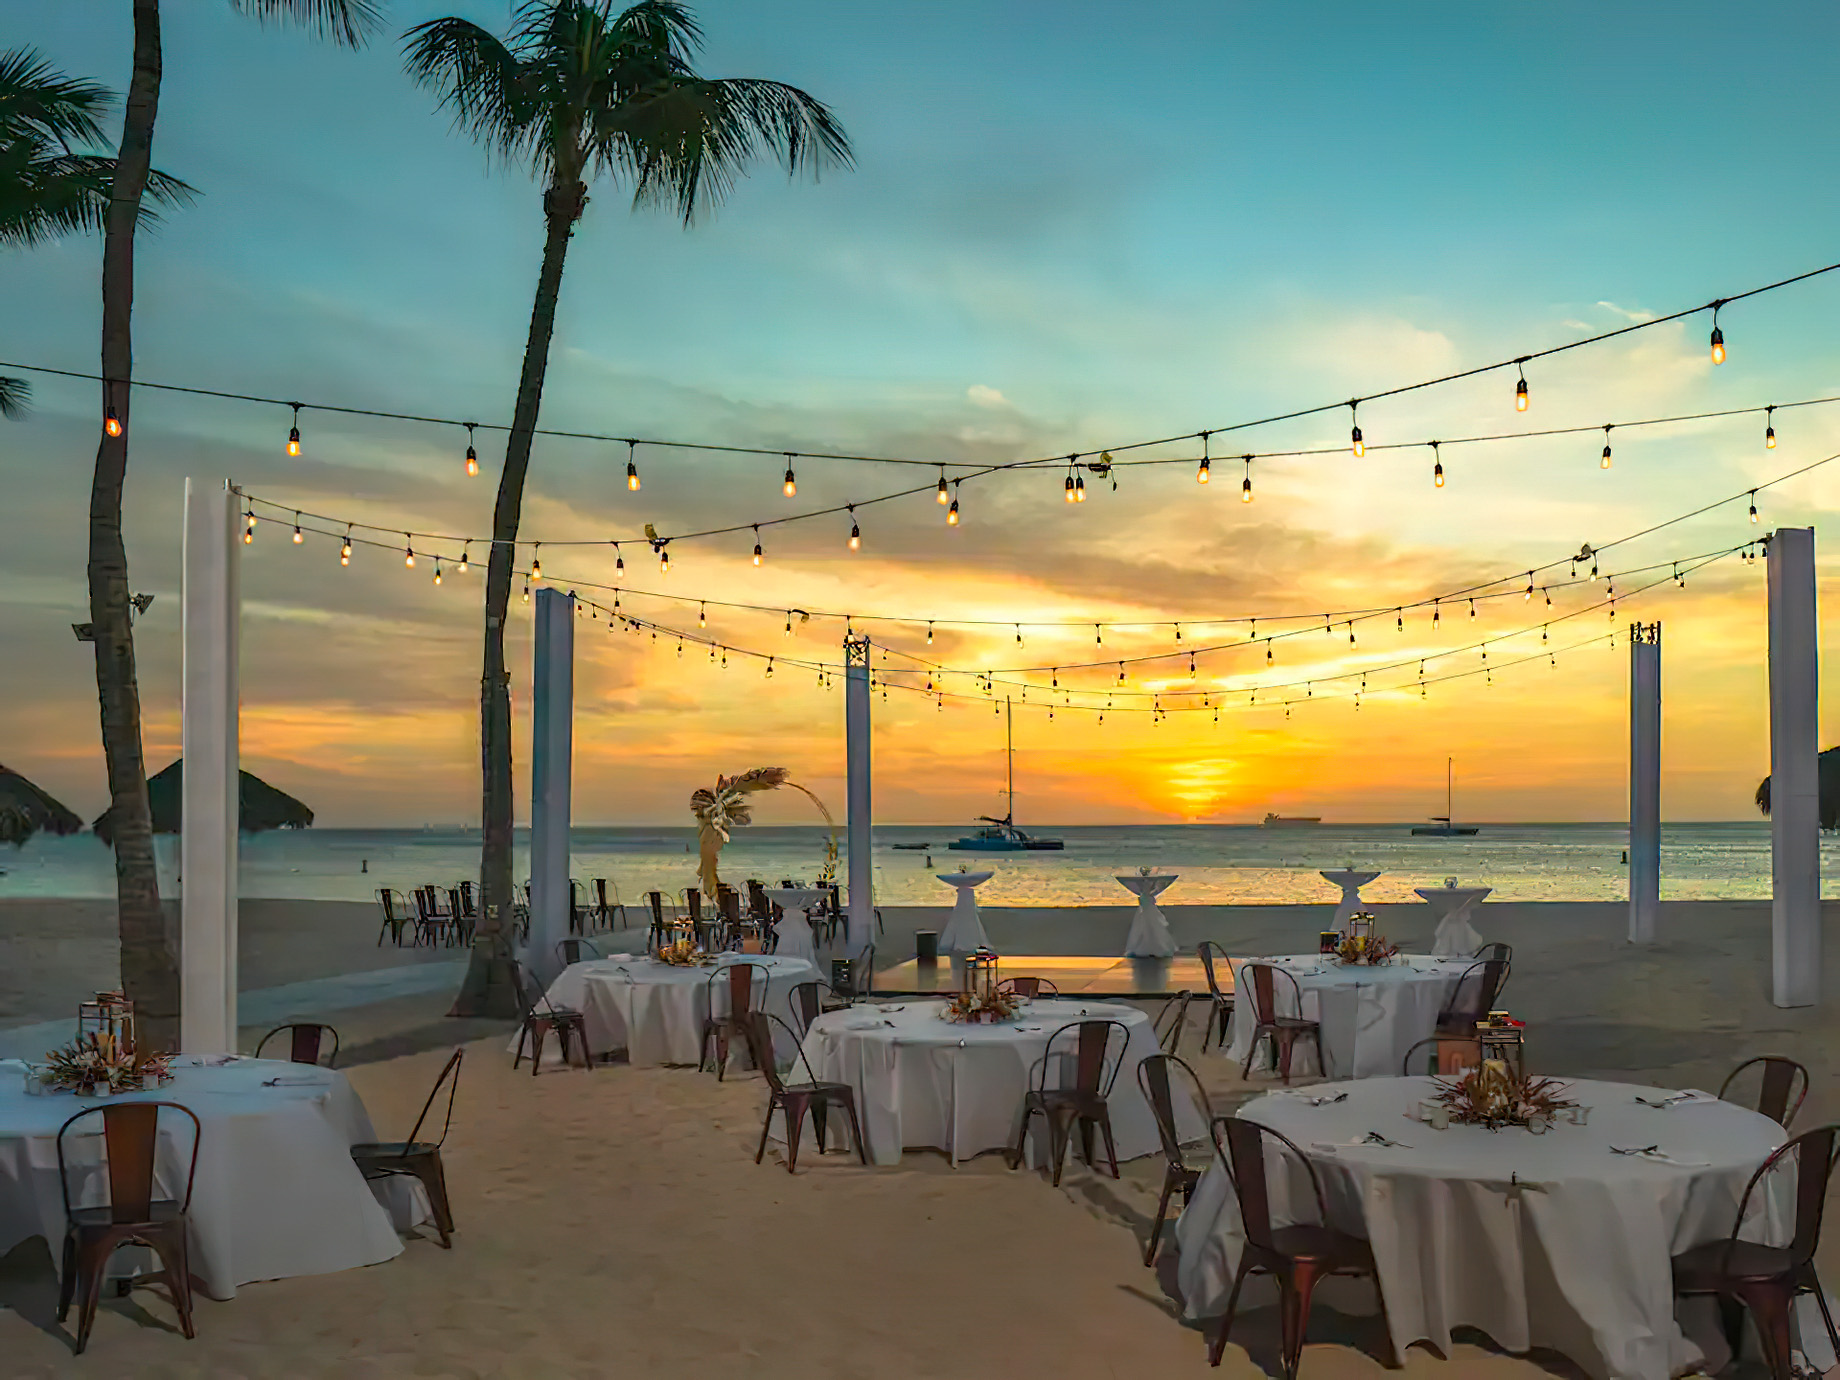 Hyatt Regency Aruba Resort & Casino – Noord, Aruba – Beach Wedding